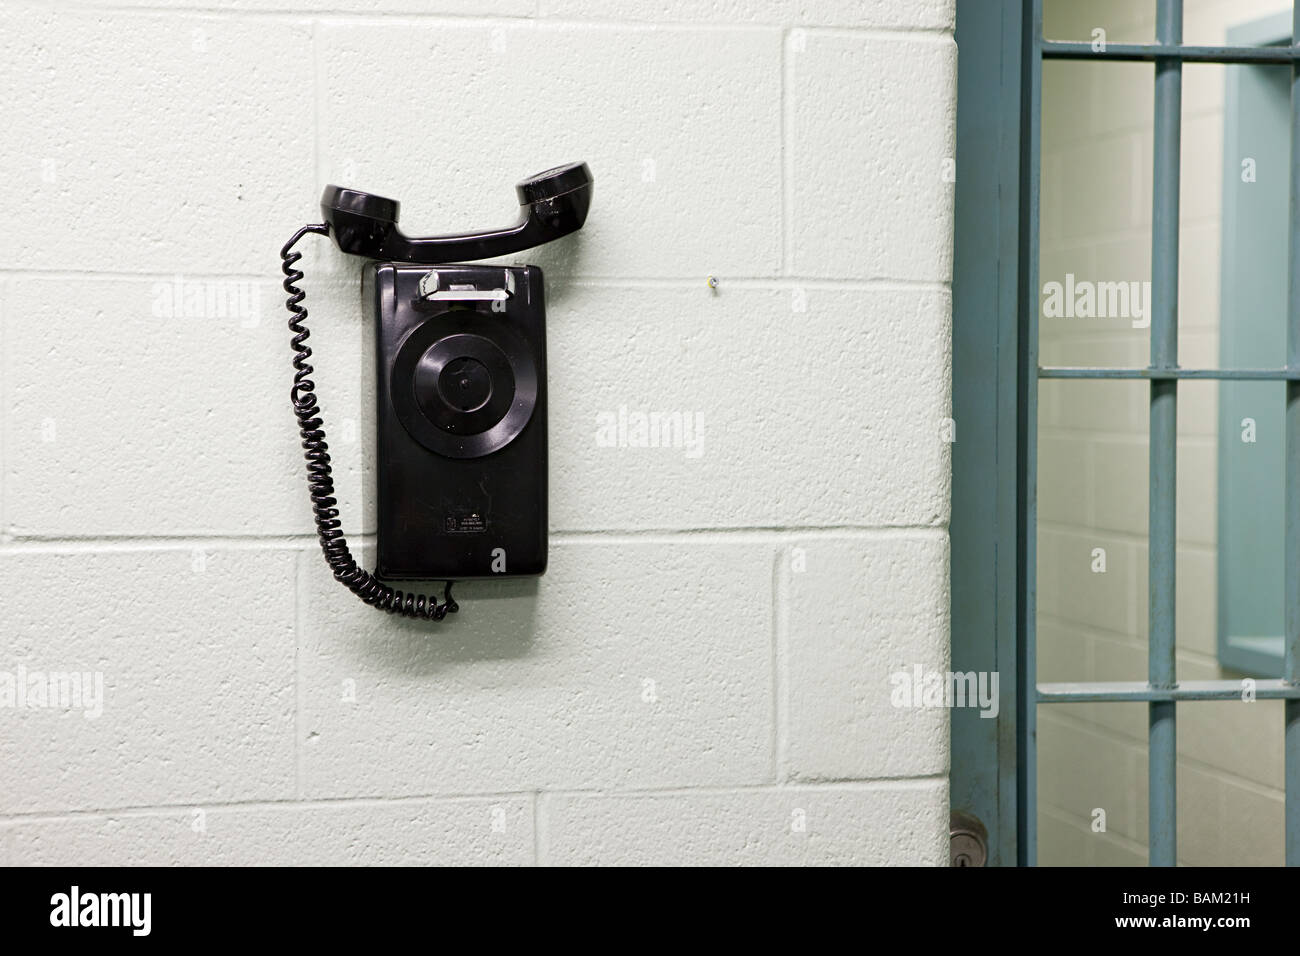 Telephone in prison Stock Photo